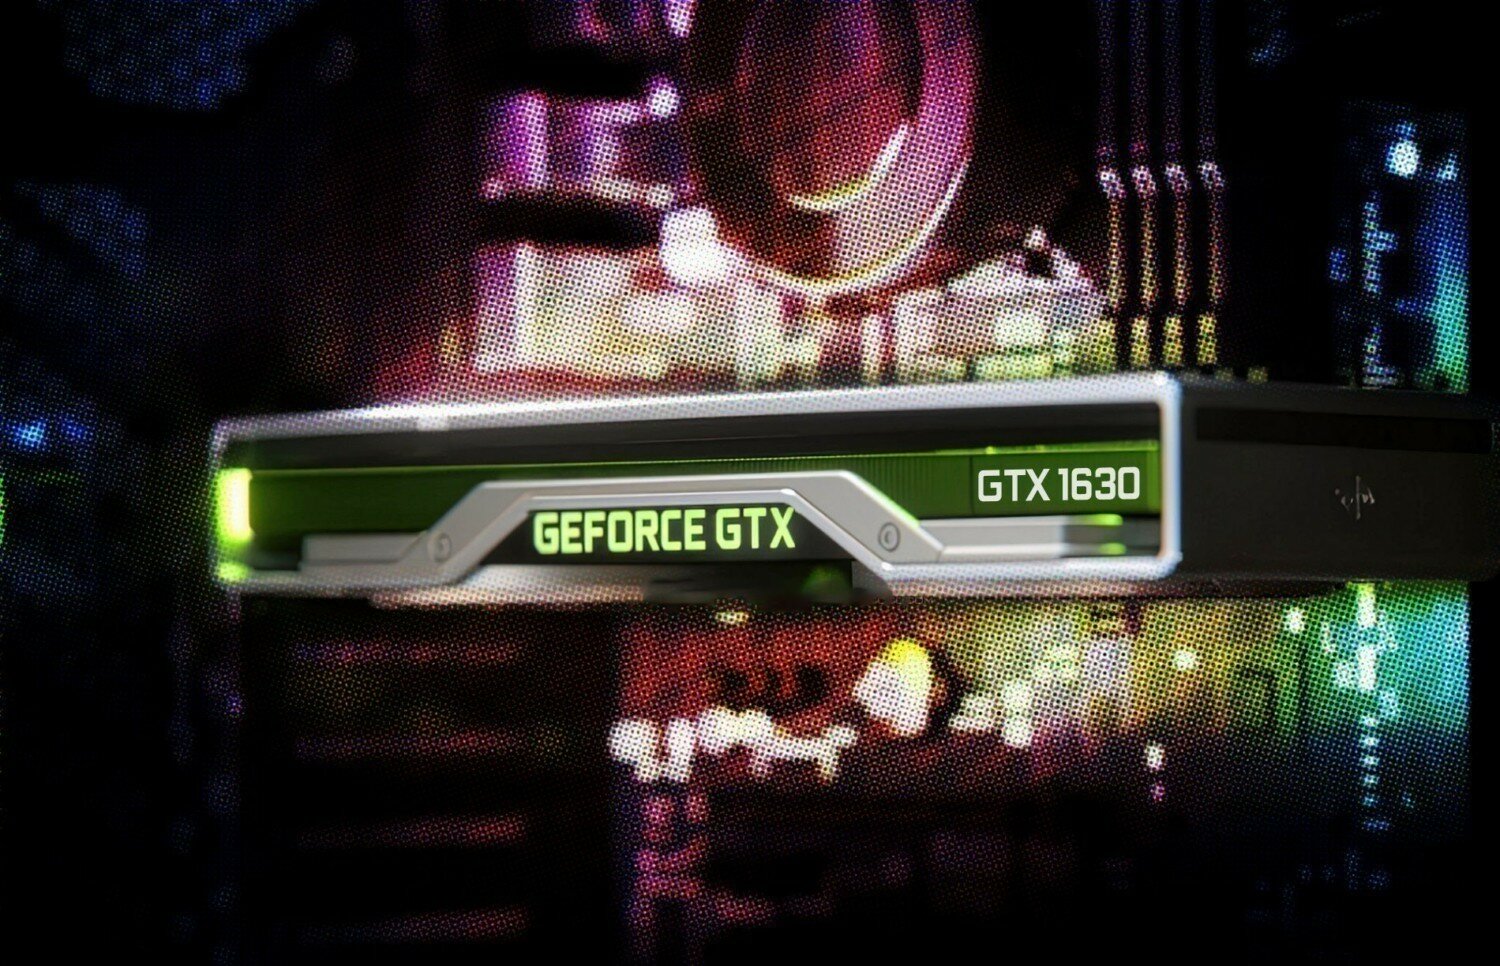 Nvidia yakinda geforce gtx 1630 ekran kartini duyurabilir 20220518